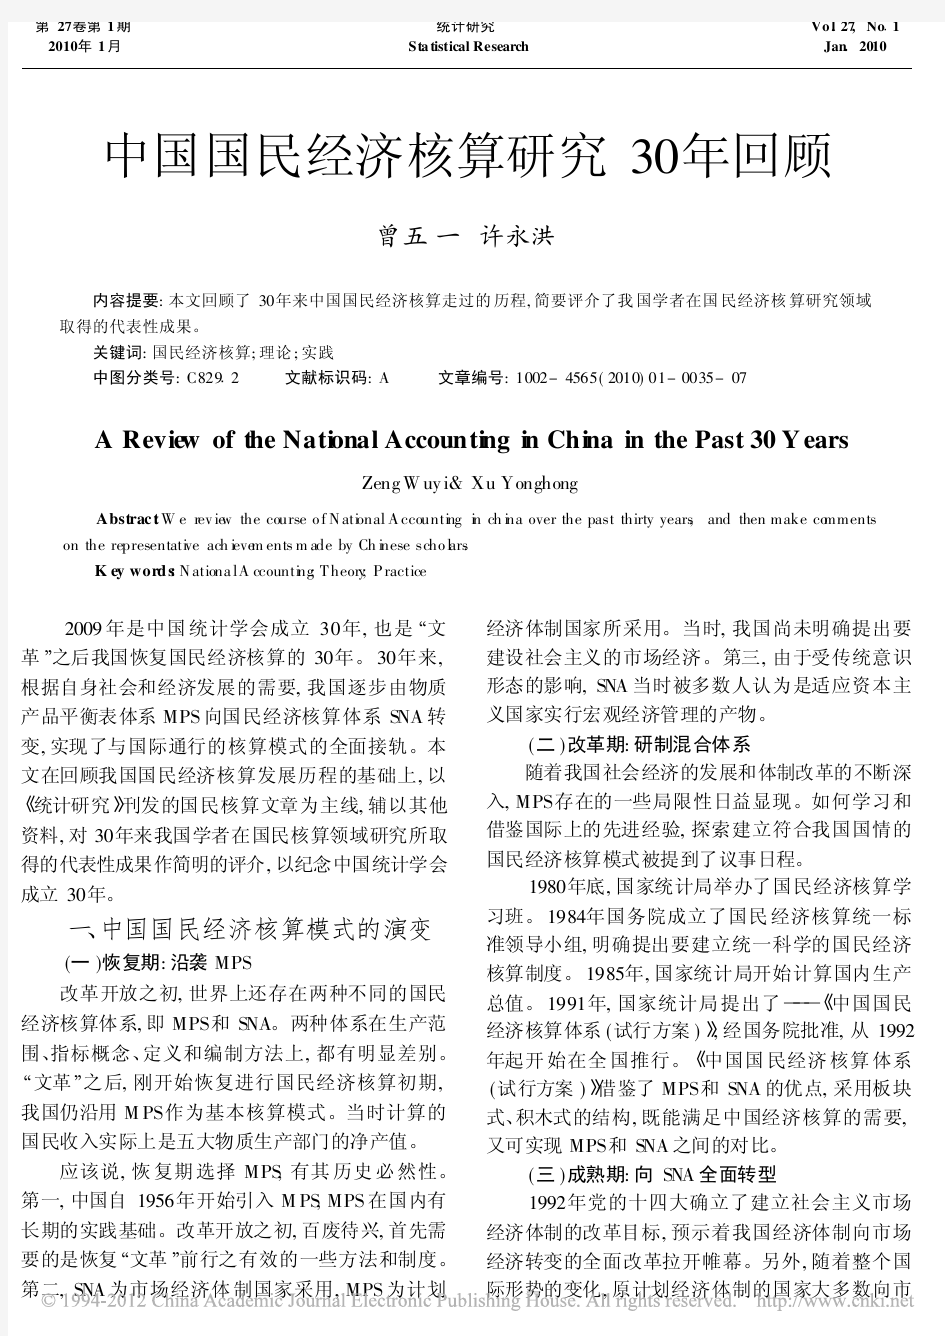 中国国民经济核算研究30年回顾